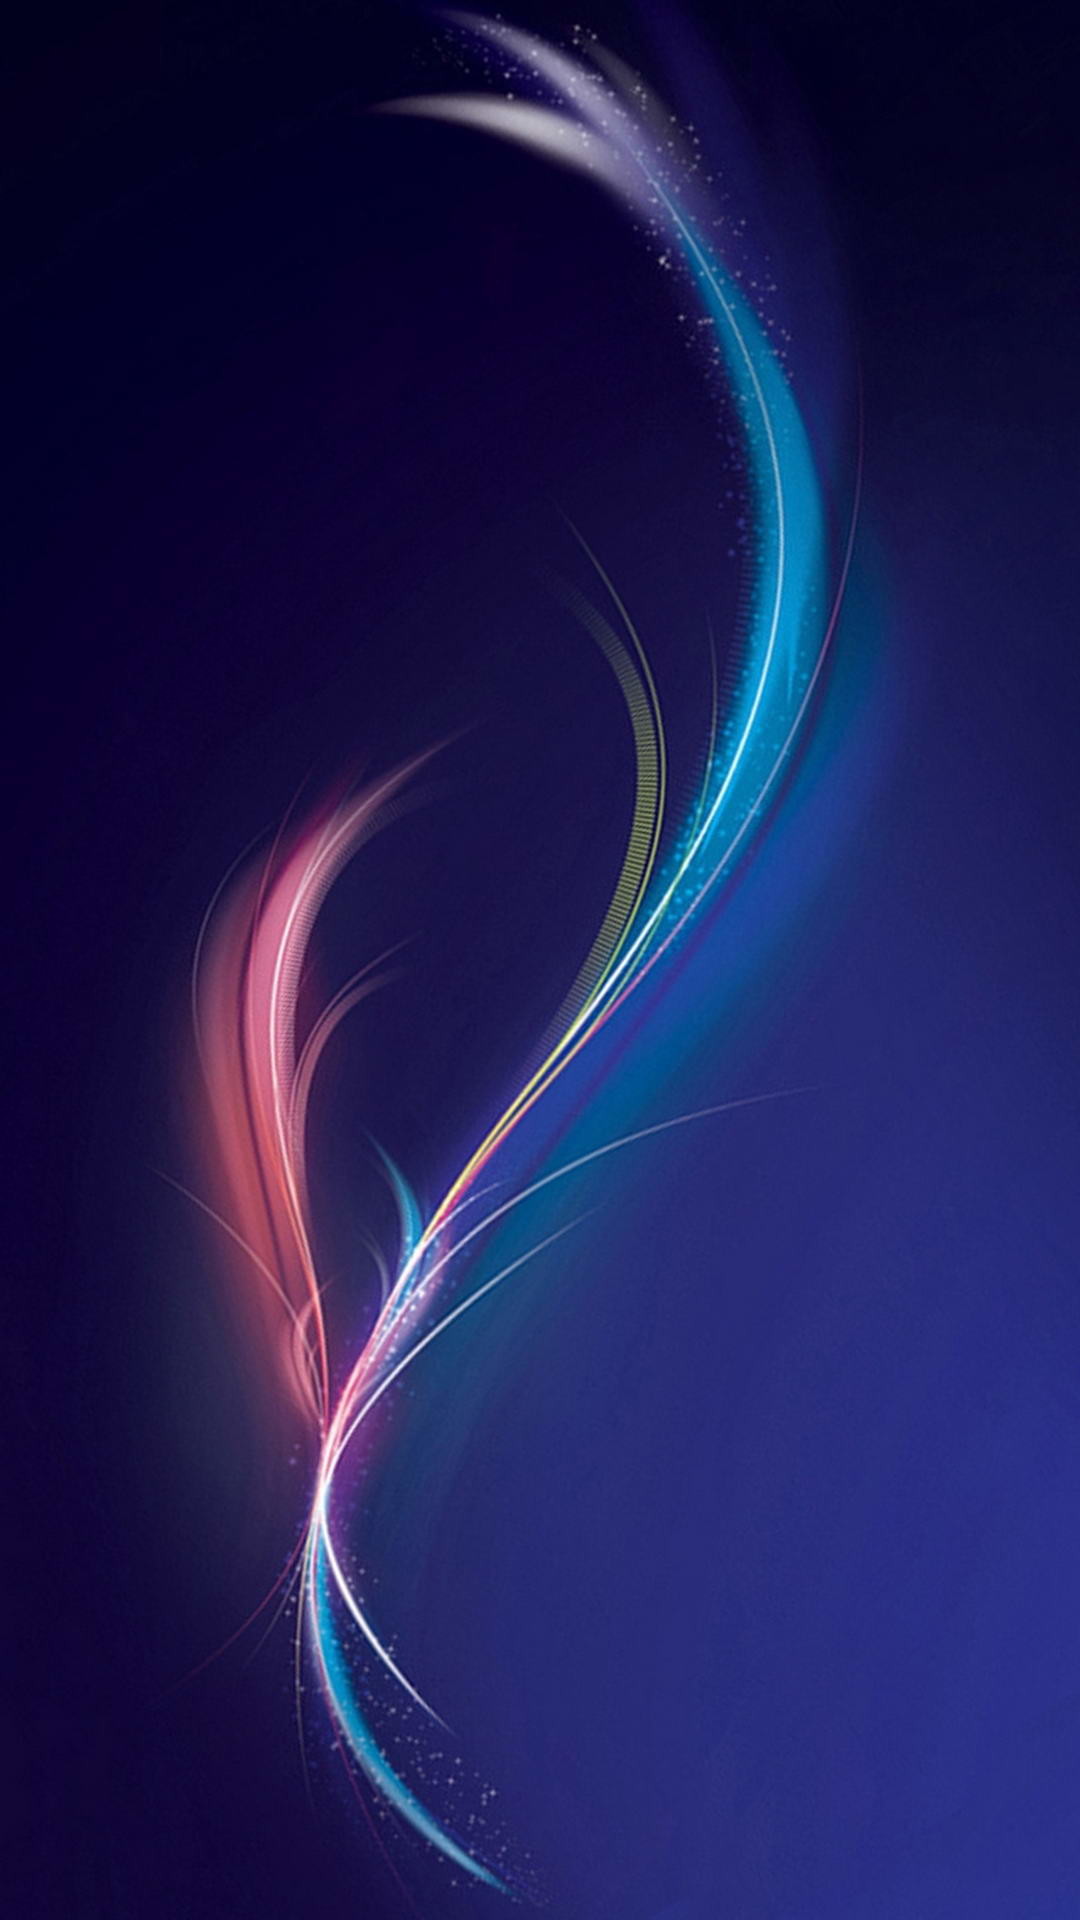 1080x1920 Inspiration Nexus 5 Wallpaper, Nexus 5 Wallpaper, Nexus 5 Wallpapers .